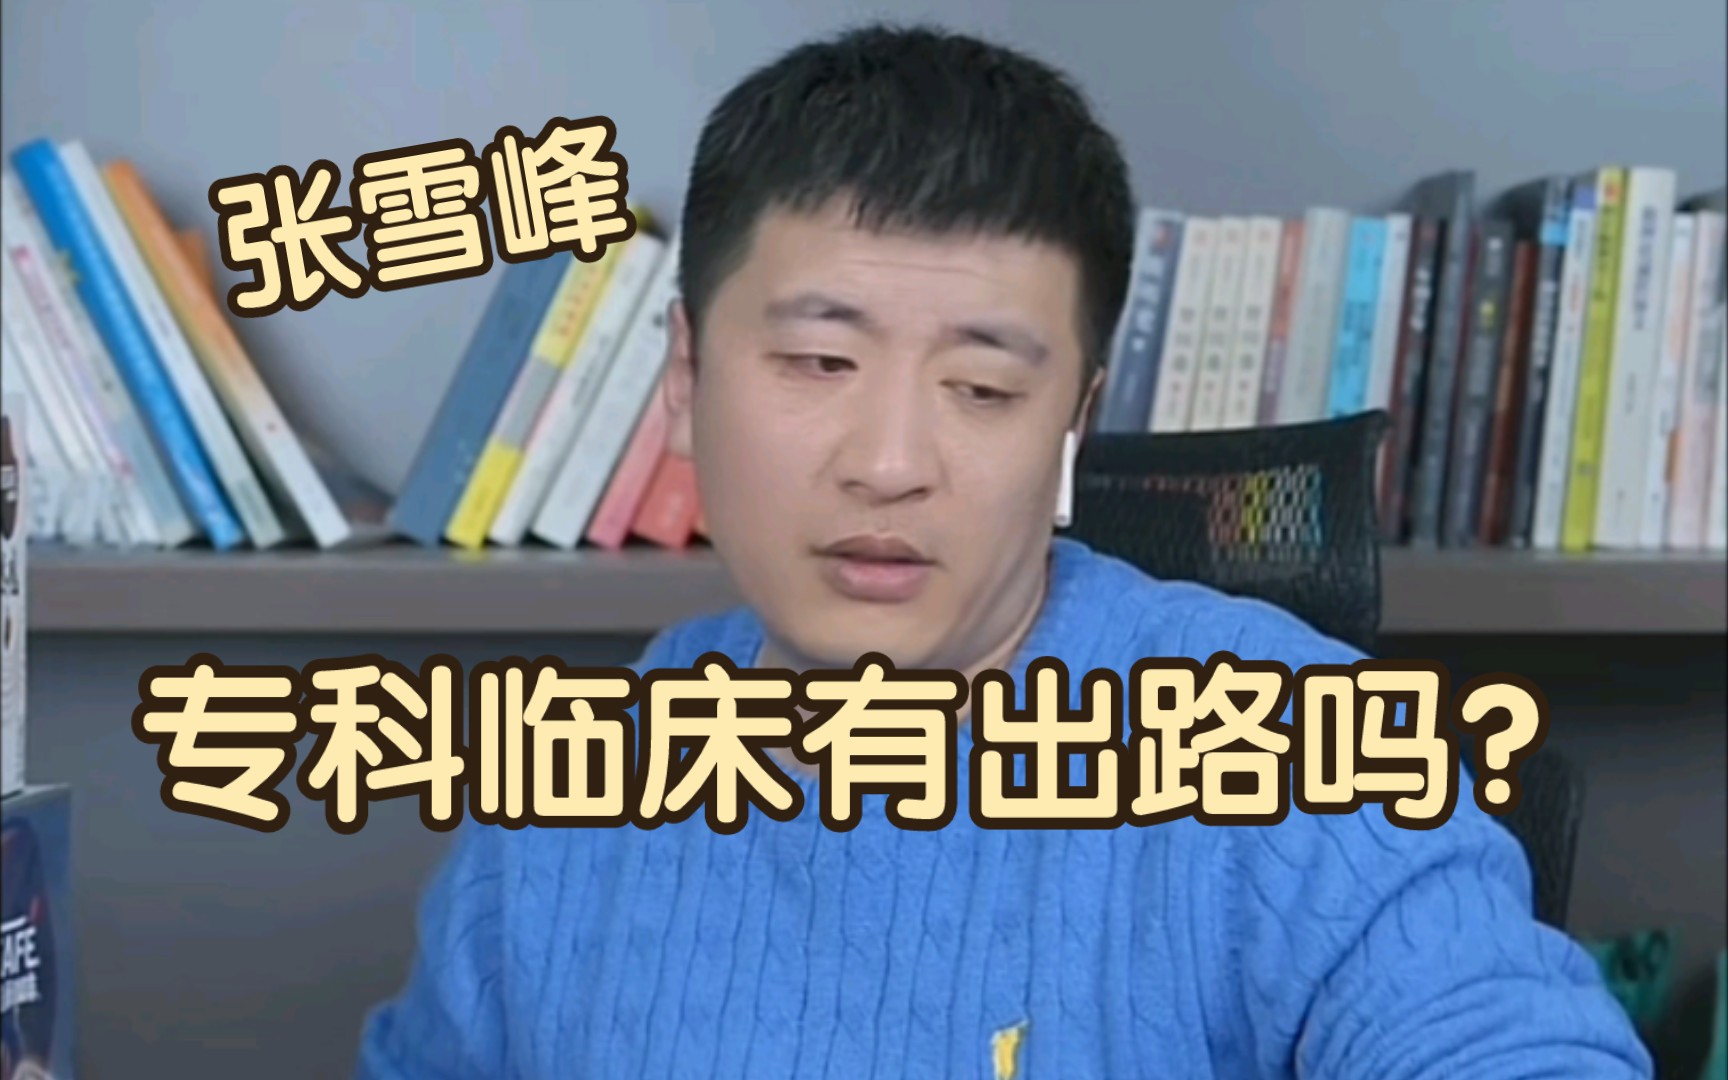 【张雪峰直播】想当作家考研考中文？老张建议你去学法律！ - 哔哩哔哩